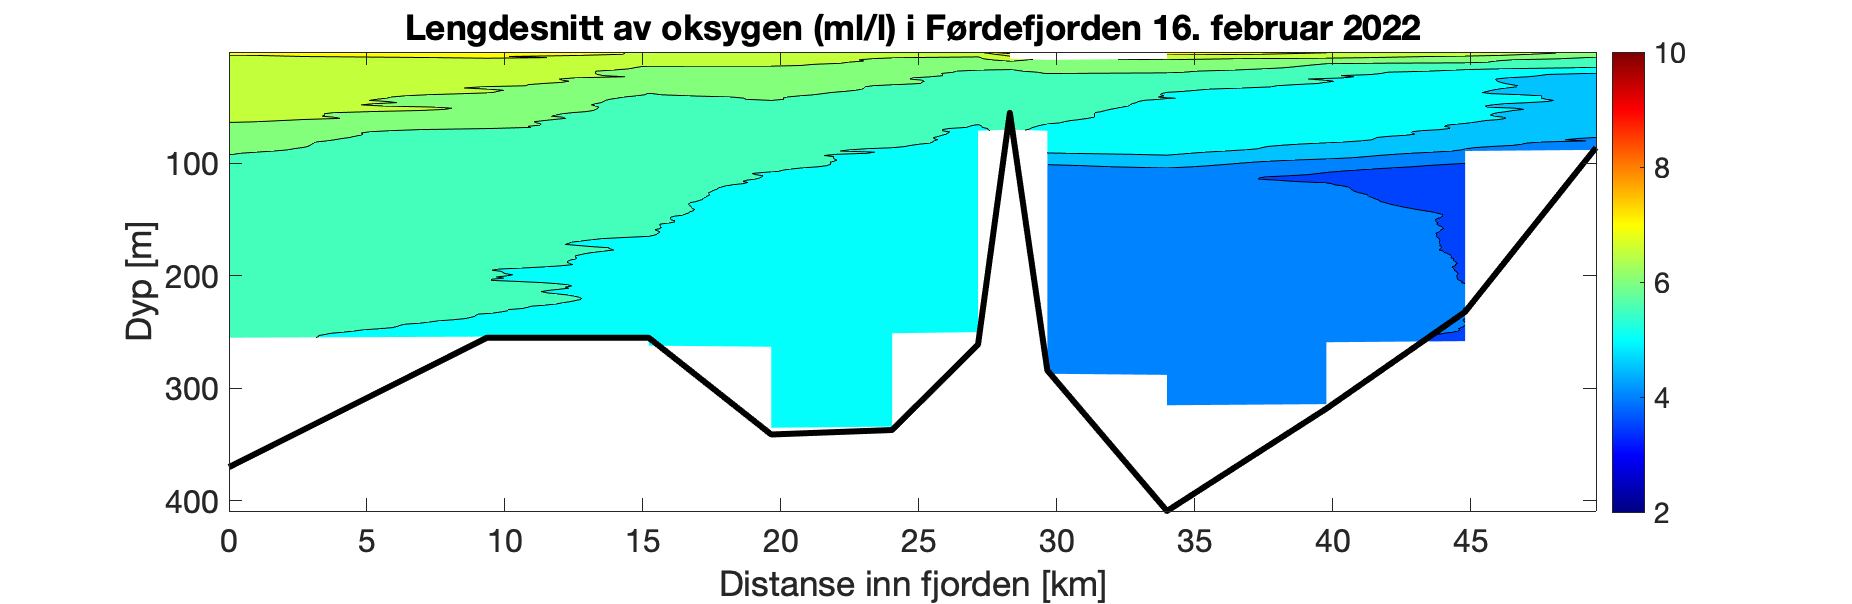 Figuren viser et histogram som illustrerer variasjon i oksygeninnhold (ml/l) i vannsøylen (0-350 meter) innover i Førdefjorden (0-50 km inn i fjorden). Fargeskalaen representerer oksygeninnhold fra 10 ml/l (rødt) til 2 ml/l (fiolett). De øvre 100 m blir jevnt rikere på O2 utover i fjorden. I det innerste bassenget (dypere enn 100 m) er O2 innholdet 4,5 til 3,5 ml/l gjennom vannsøylen, mens det i den ytre delen av fjorden er 6,5 til 5 ml/l.